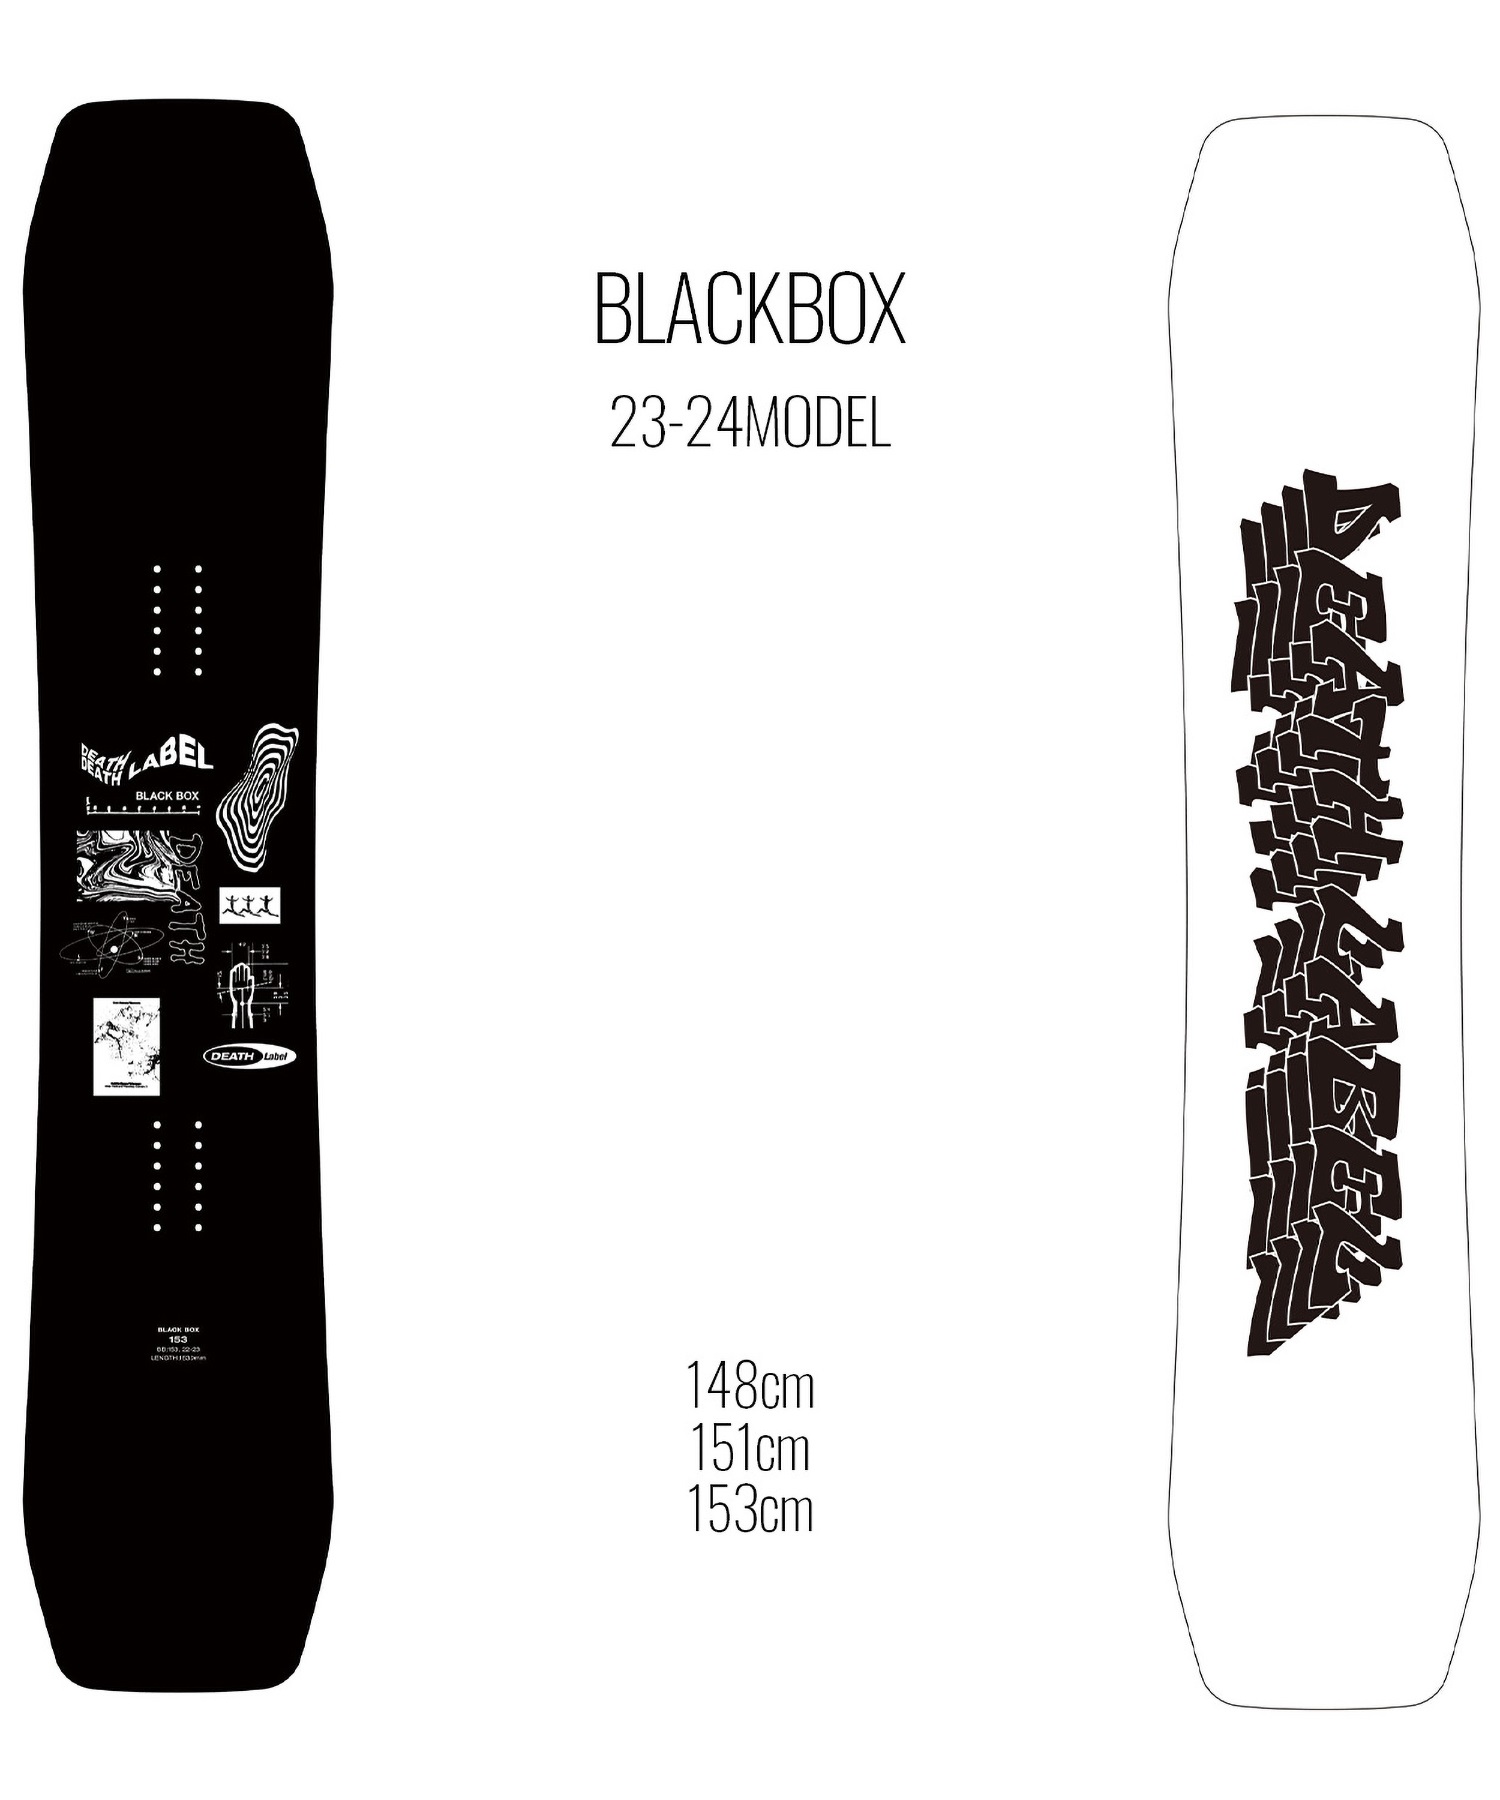 【早期購入/店頭受取対象外】スノーボード 板 メンズ DEATH LABEL デスレーベル BLACKBOX 23-24モデル ムラサキスポーツ KK C2(BLACKBOX-148cm)